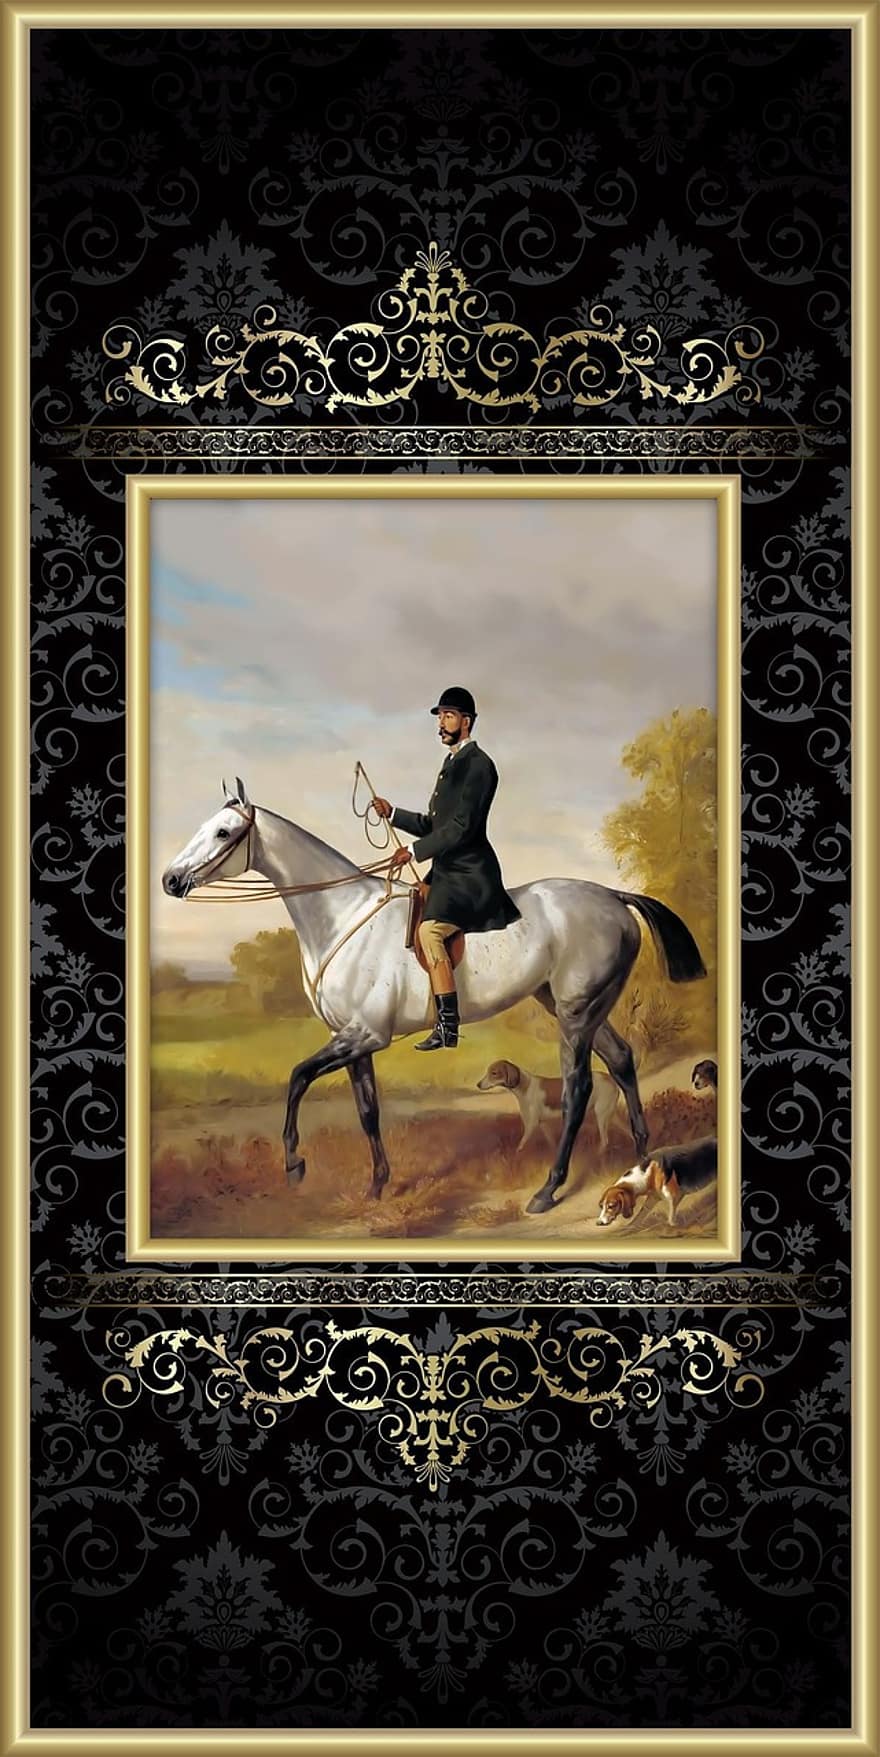 Horse, Man, Victorian, Equestrian, Horsemanship, Gentleman, Riding, Rider, Dog, Hound, Elegant